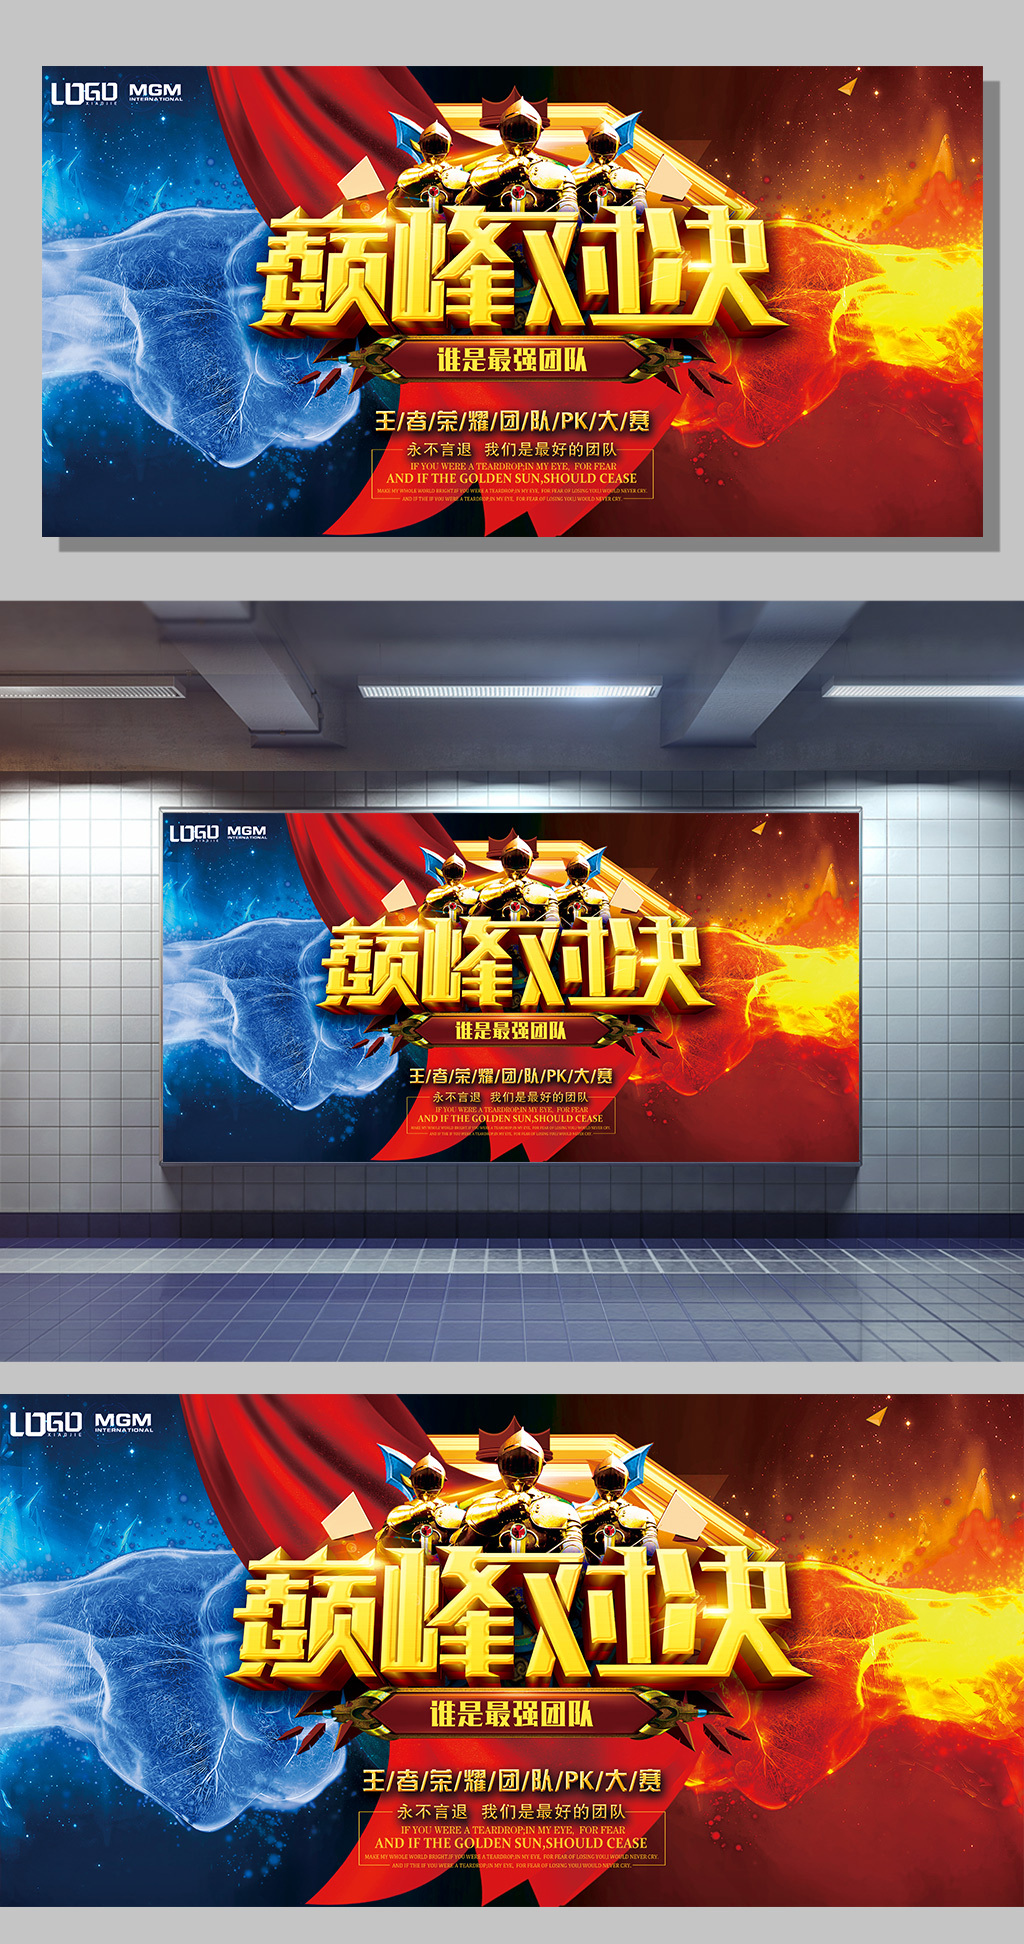 王者荣耀vs巅峰对决拳头海报设计